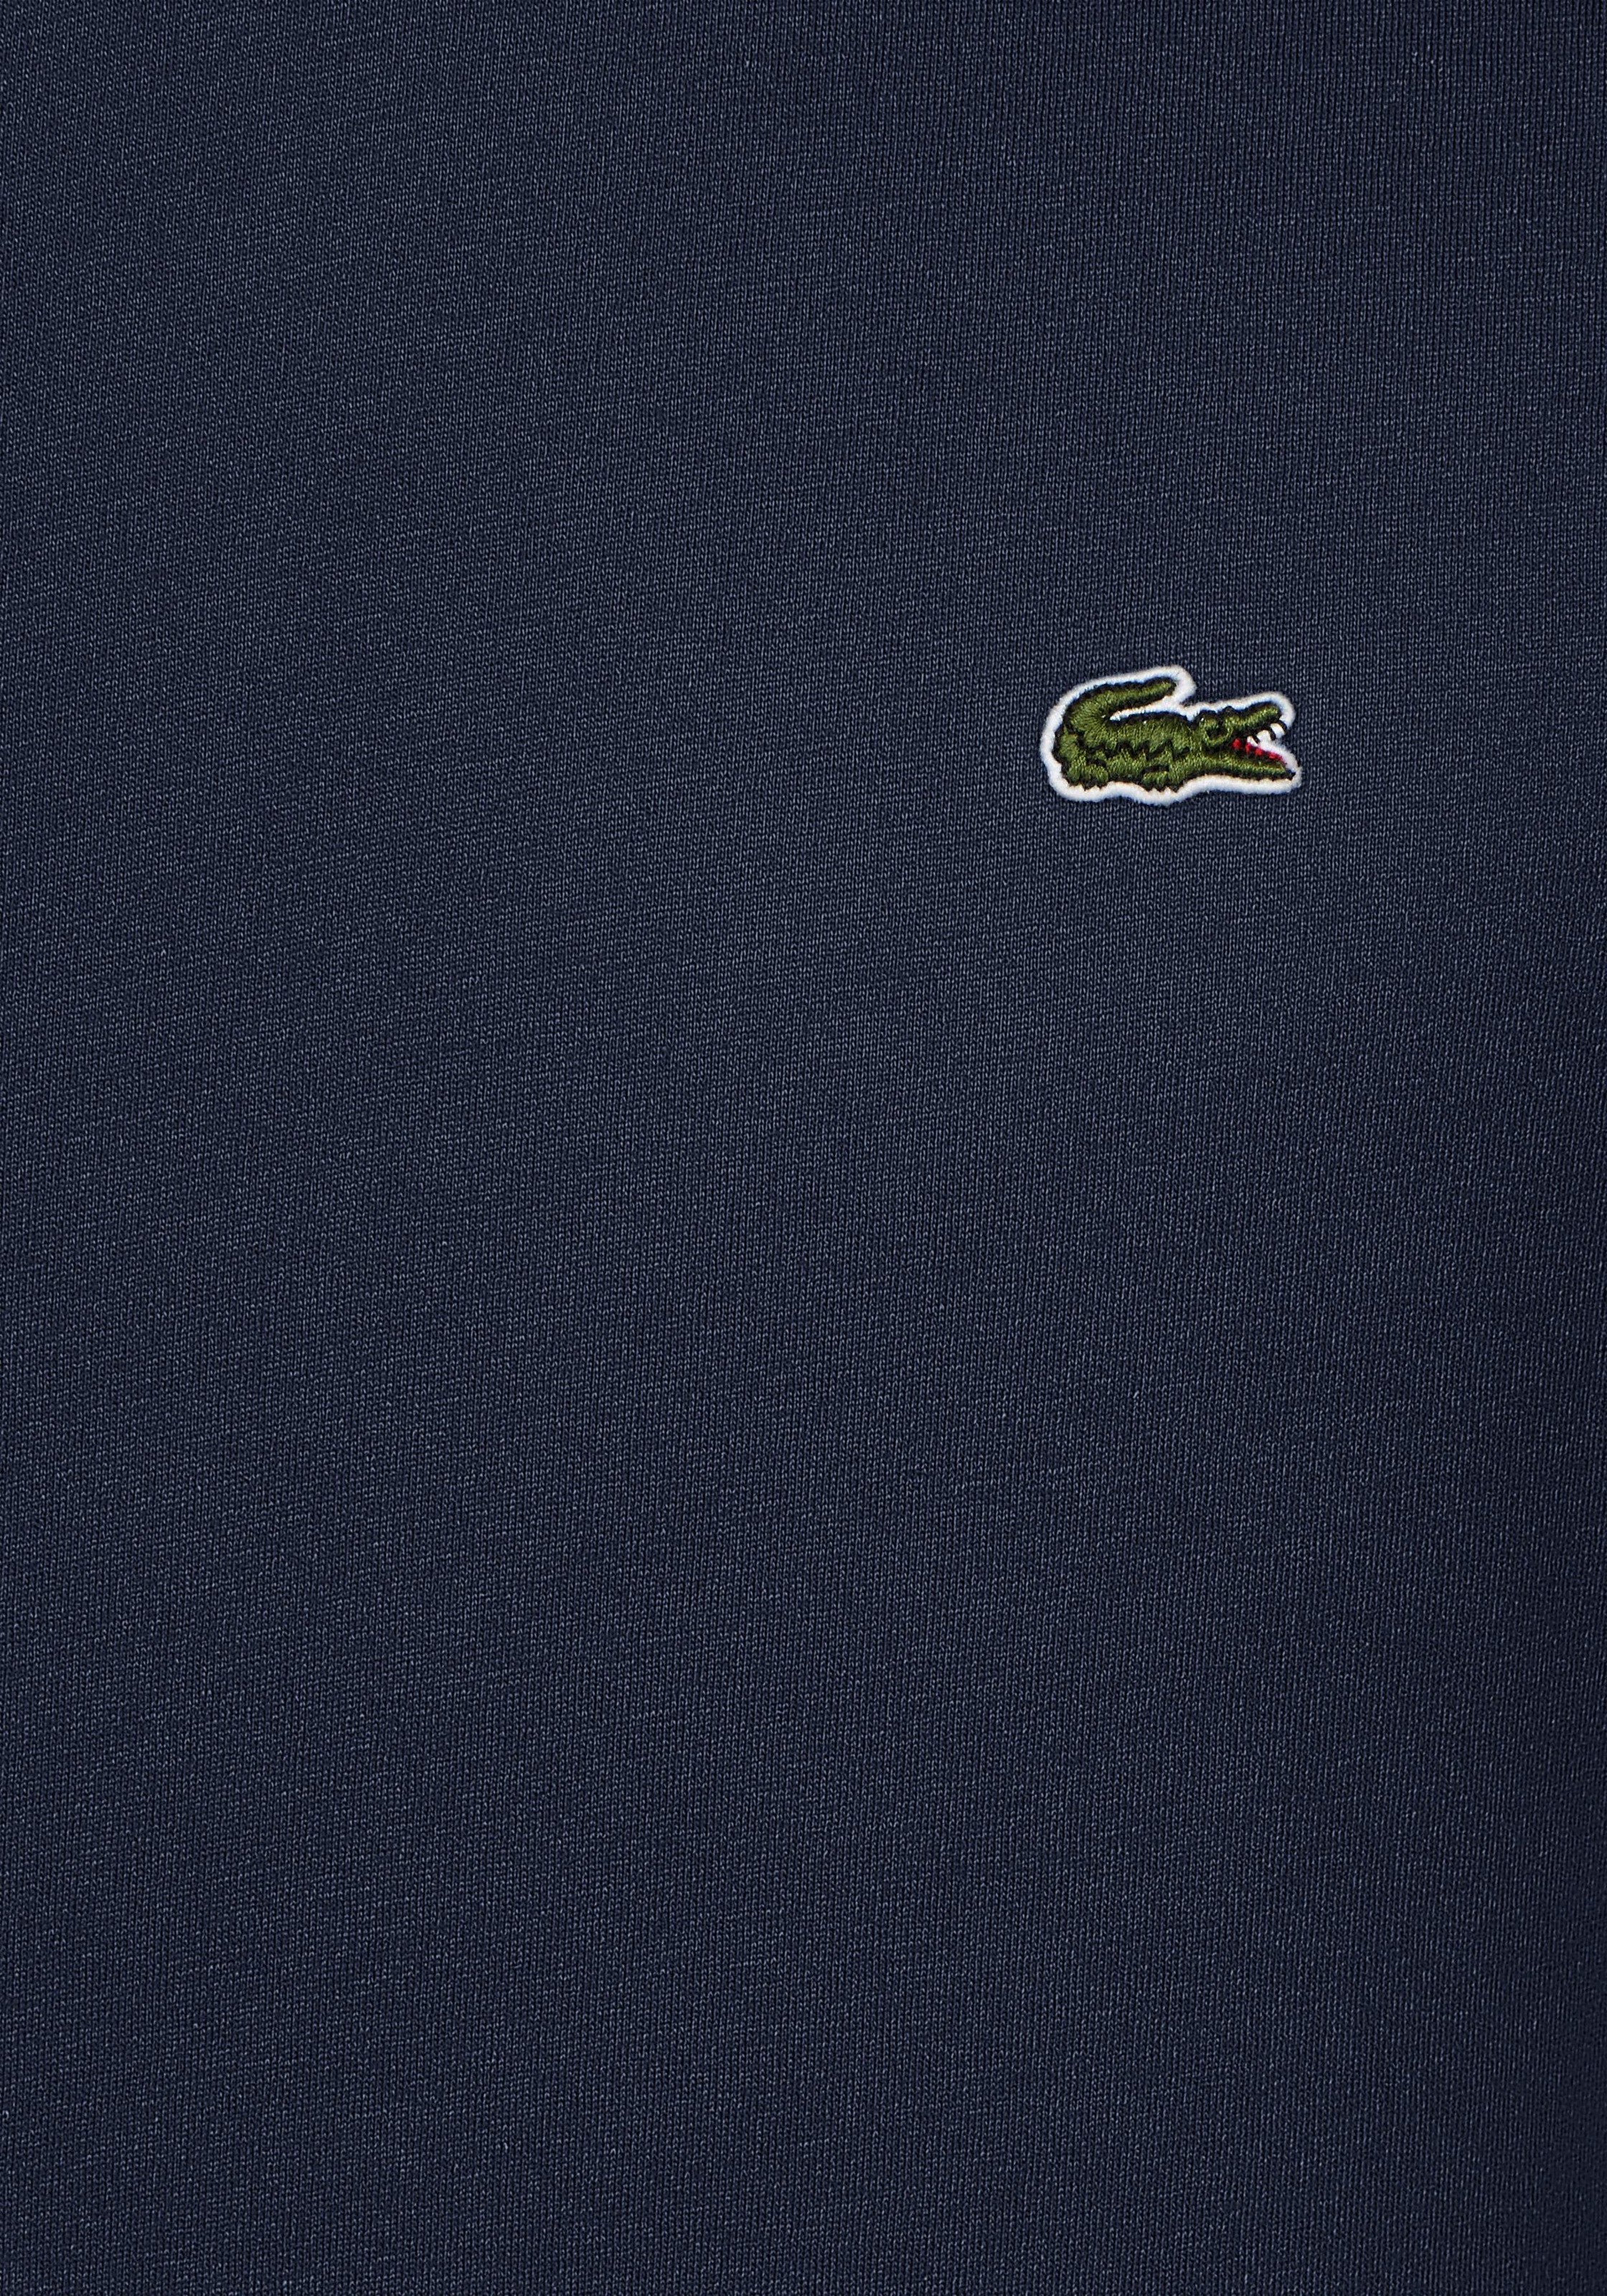 bei (1 Statemen Iconisches der Lacoste Brust OTTO V-Shirt, tlg.), auf ein für Lacoste-Krokodil stilvolles online shoppen